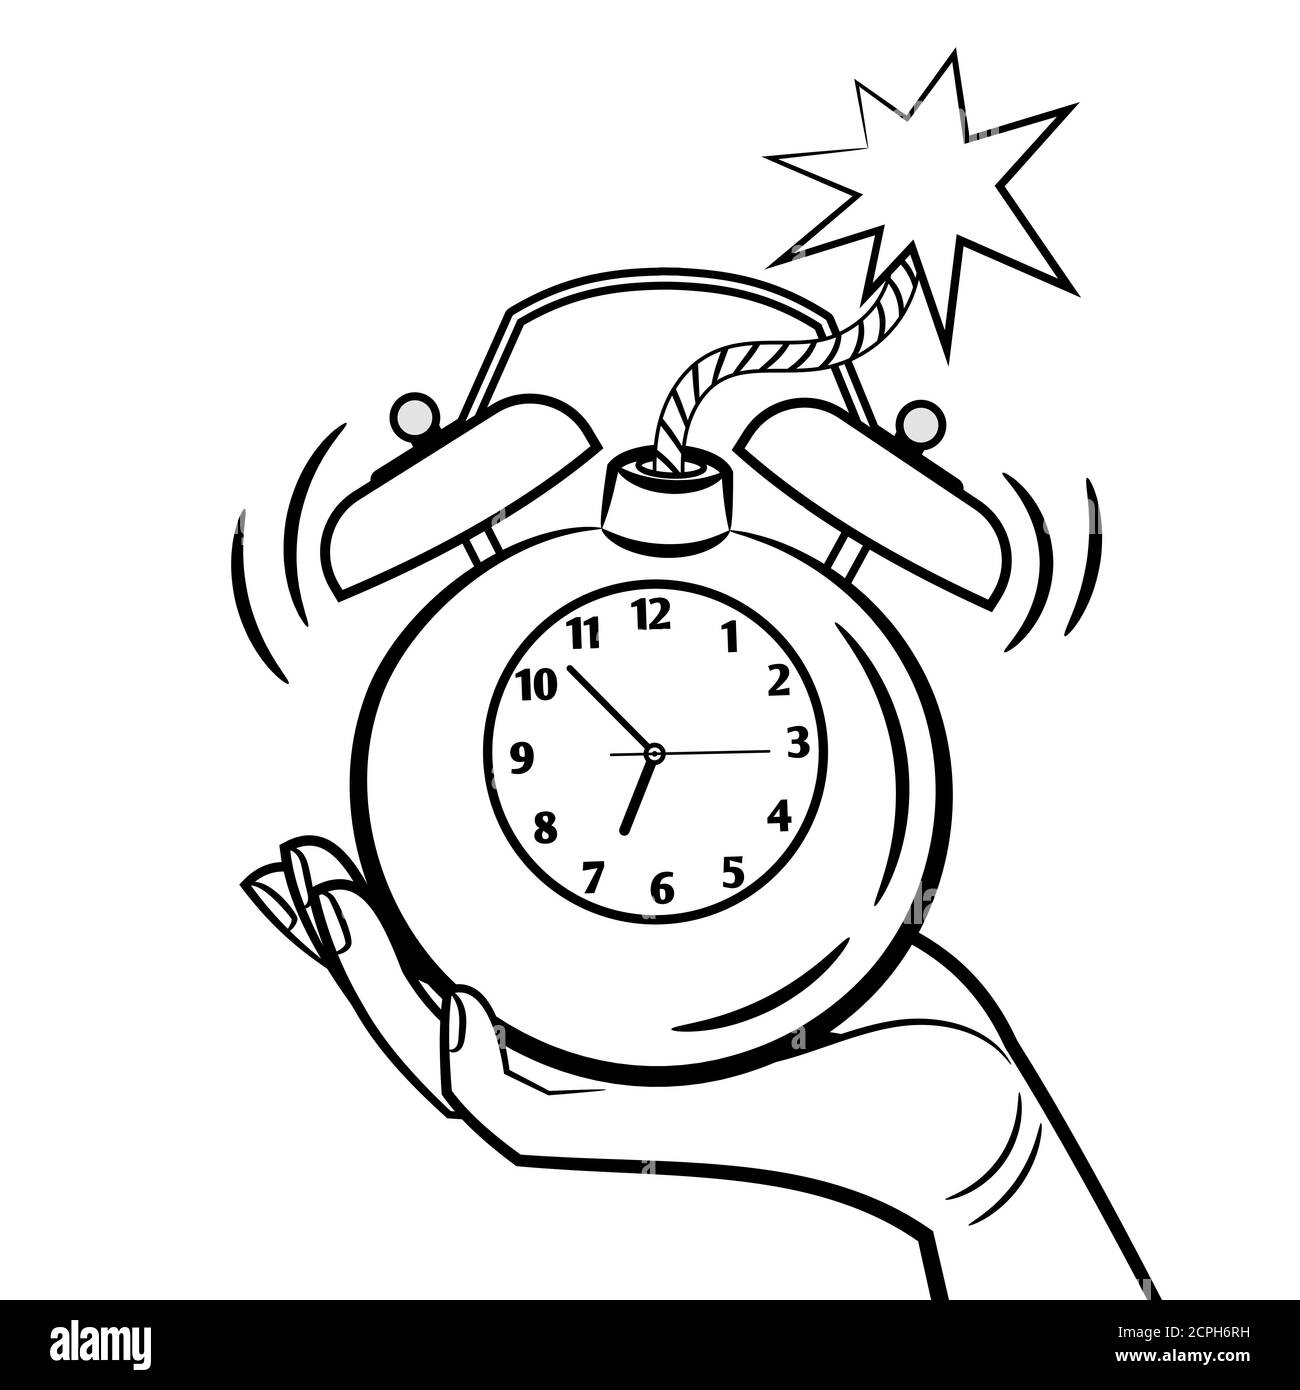 Illustration vectorielle d'un réveil de type bombe. Page de coloriage de  l'horloge de réveil Image Vectorielle Stock - Alamy